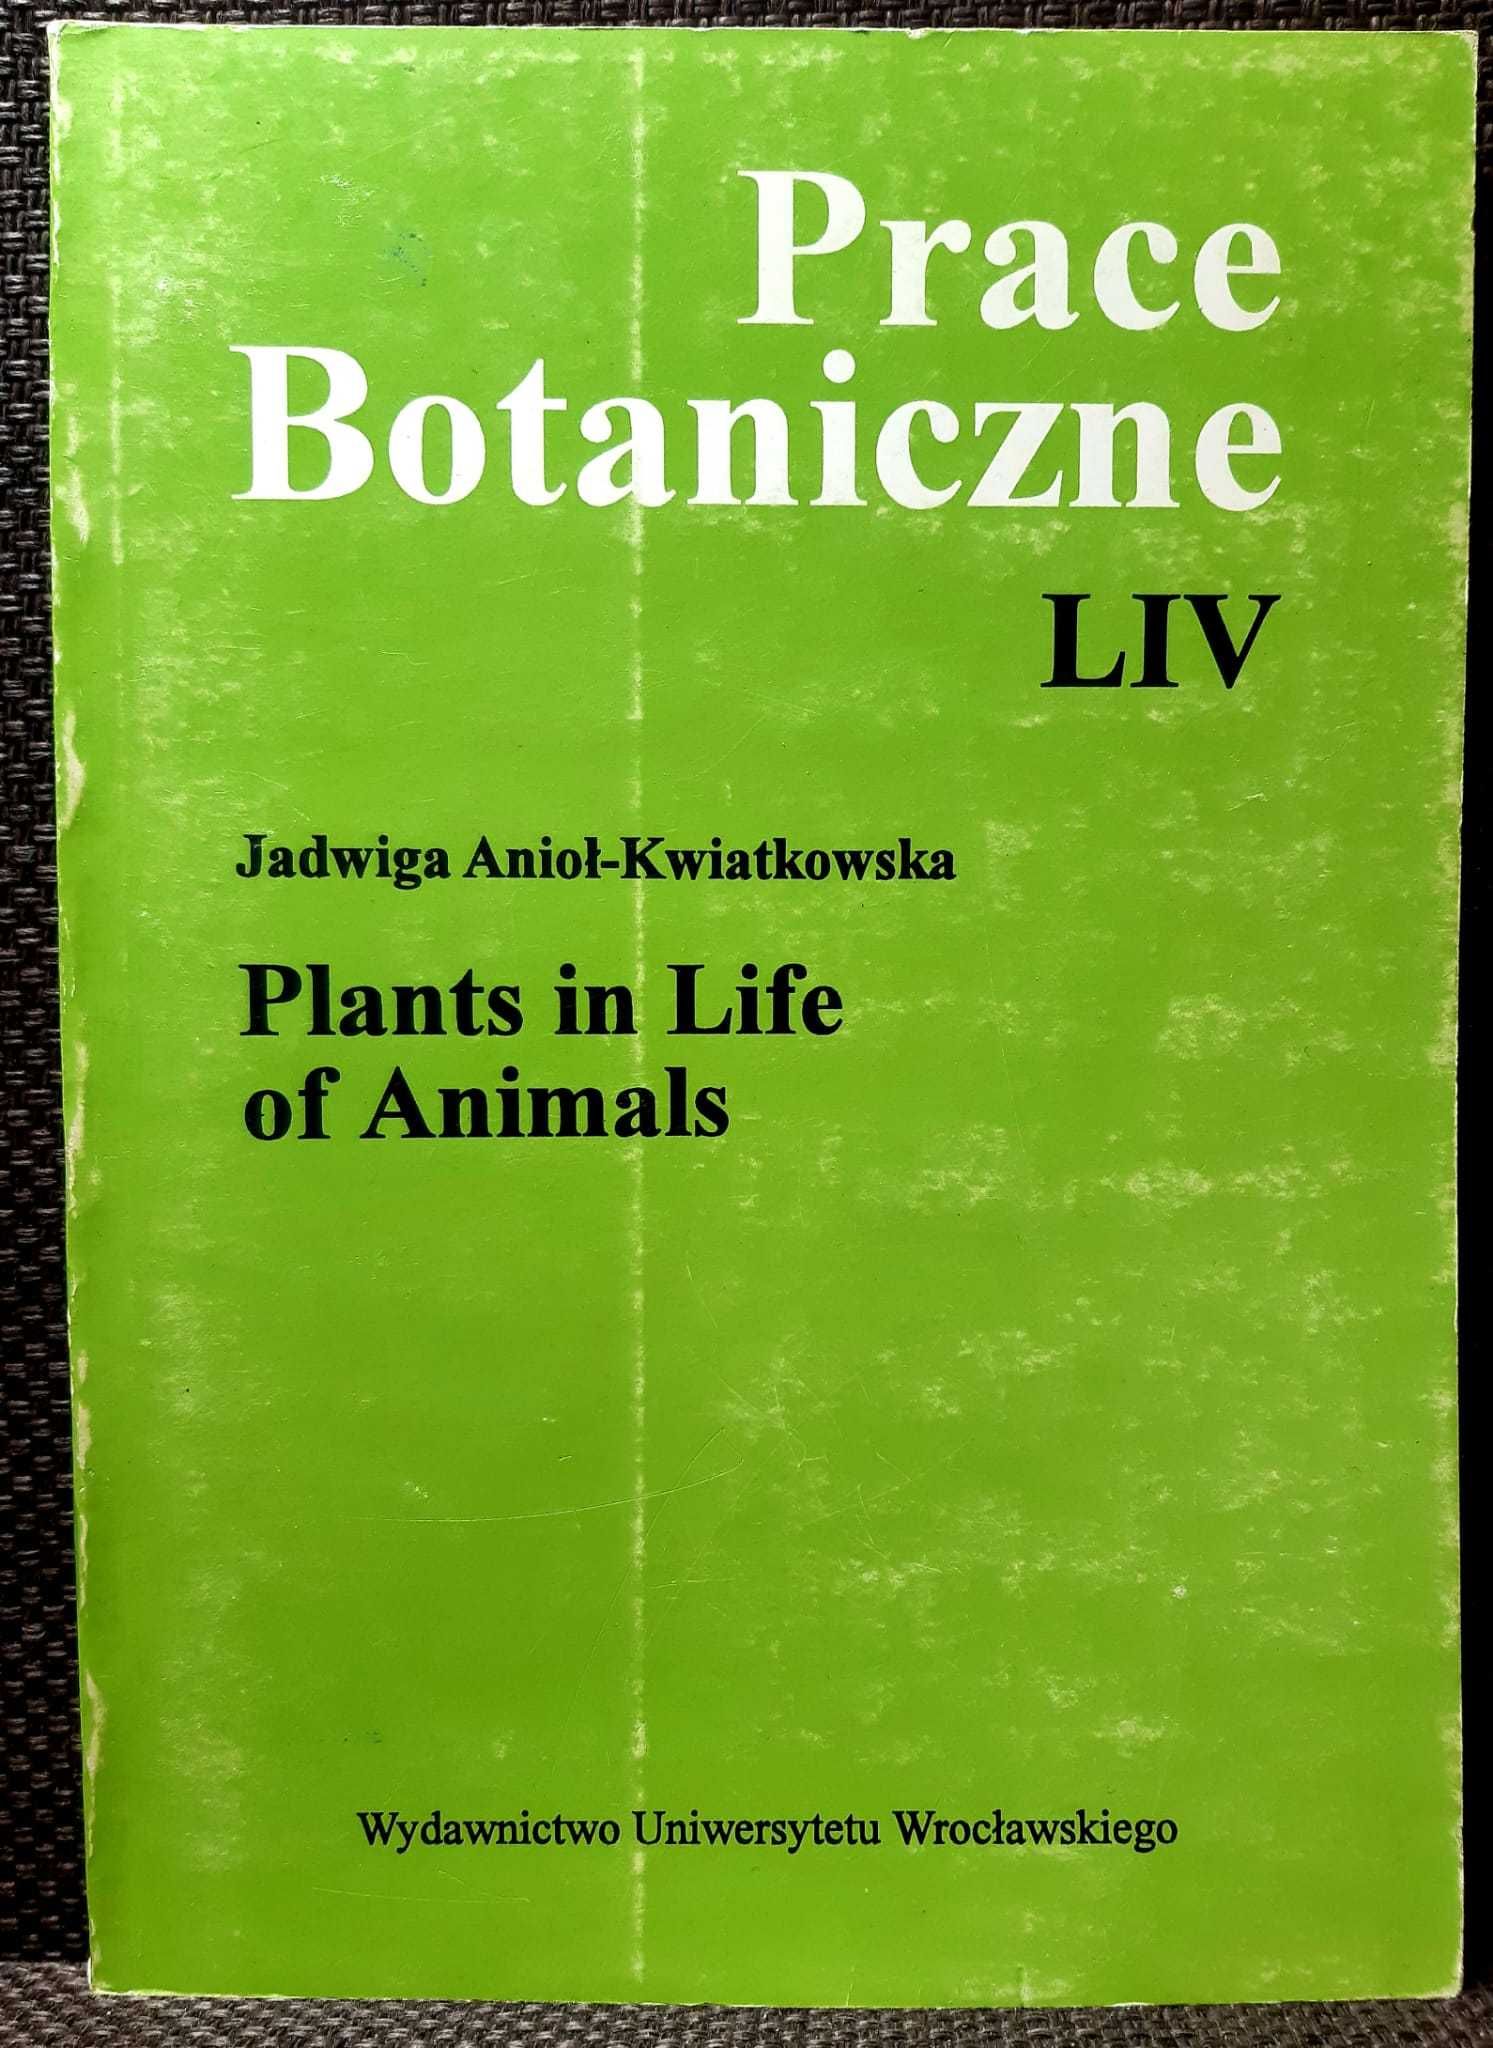 Prace Botaniczne LIV, Plants in Life of Animals, Anioł-Kwiatkowska